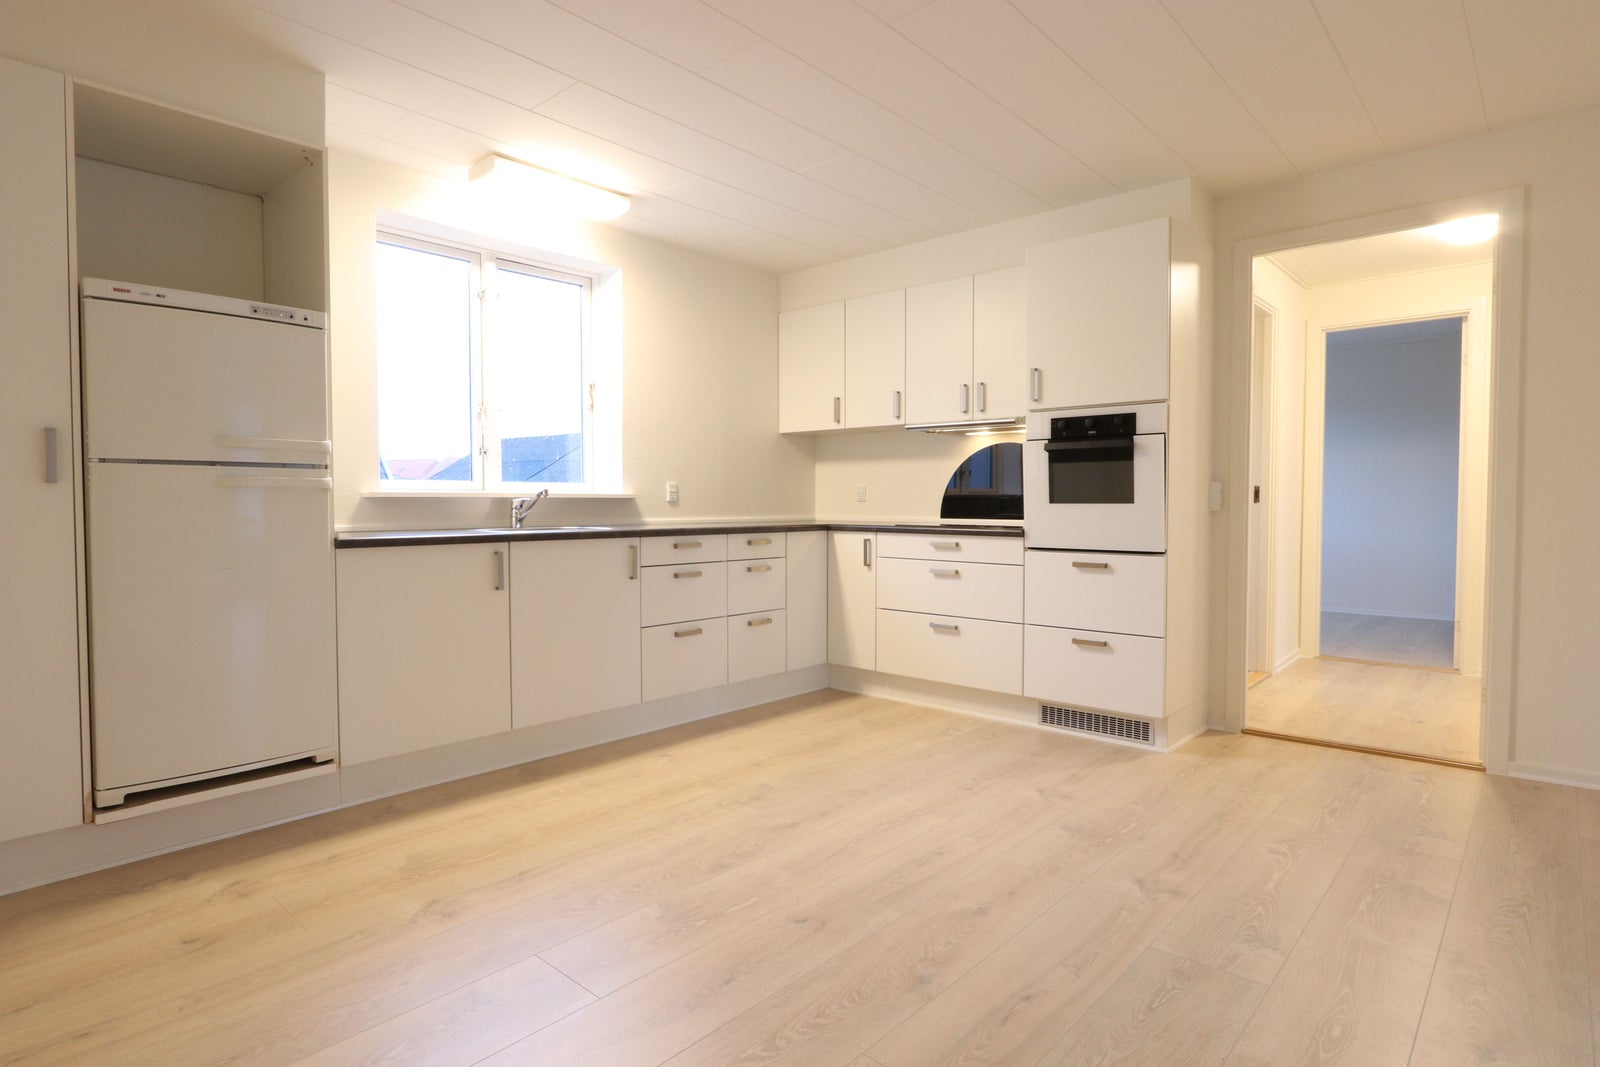 3 værelses lejlighed i Horsens 8700 på 83 kvm